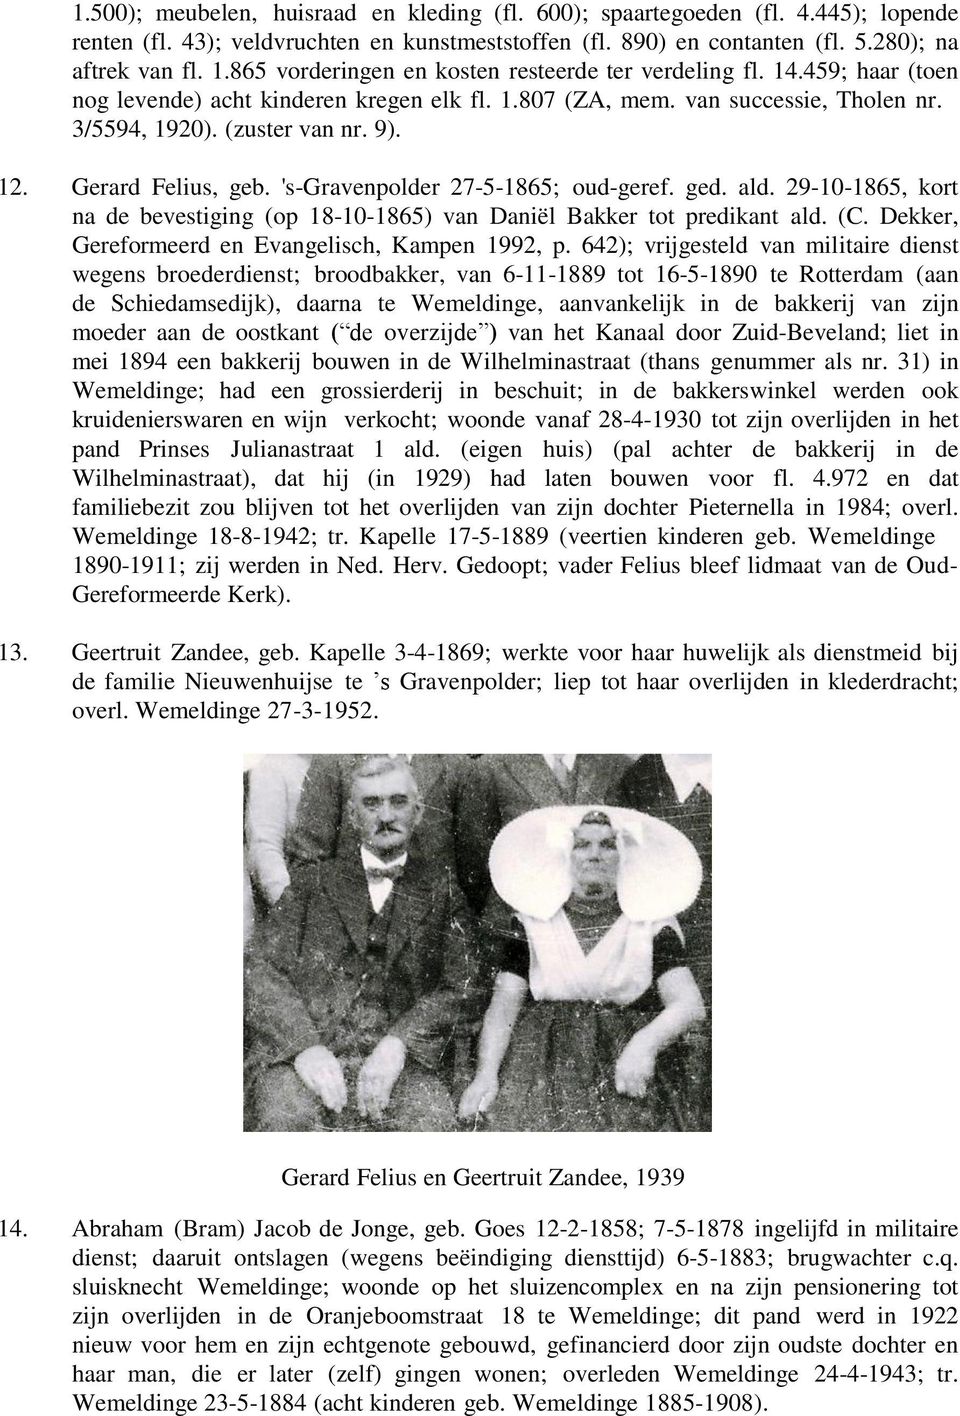 Gerard Felius, geb. 's-gravenpolder 27-5-1865; oud-geref. ged. ald. 29-10-1865, kort na de bevestiging (op 18-10-1865) van Daniël Bakker tot predikant ald. (C.